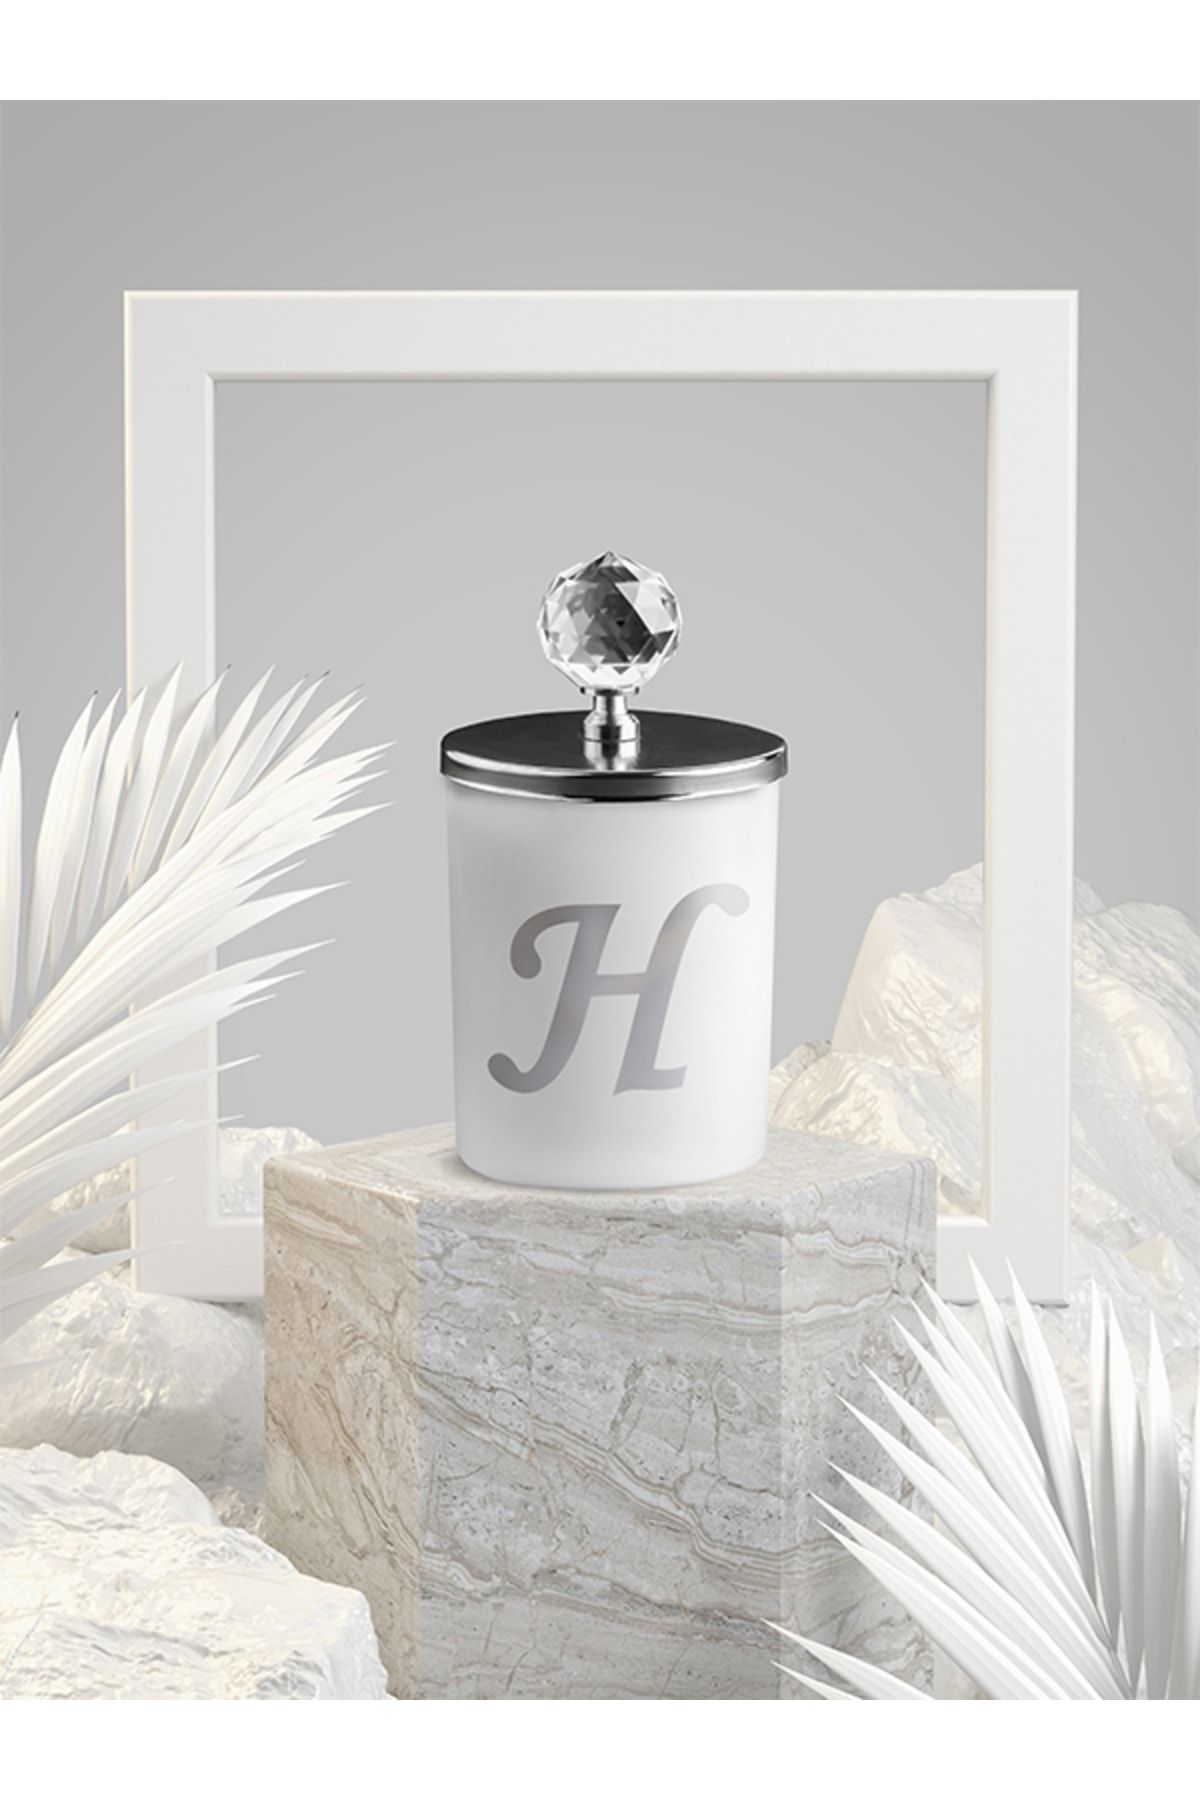 Tiem Concept Özel Tasarım H Harfli Vanilya Kokulu Gümüş Kristal Tepelikli Beyaz Bardak Mum